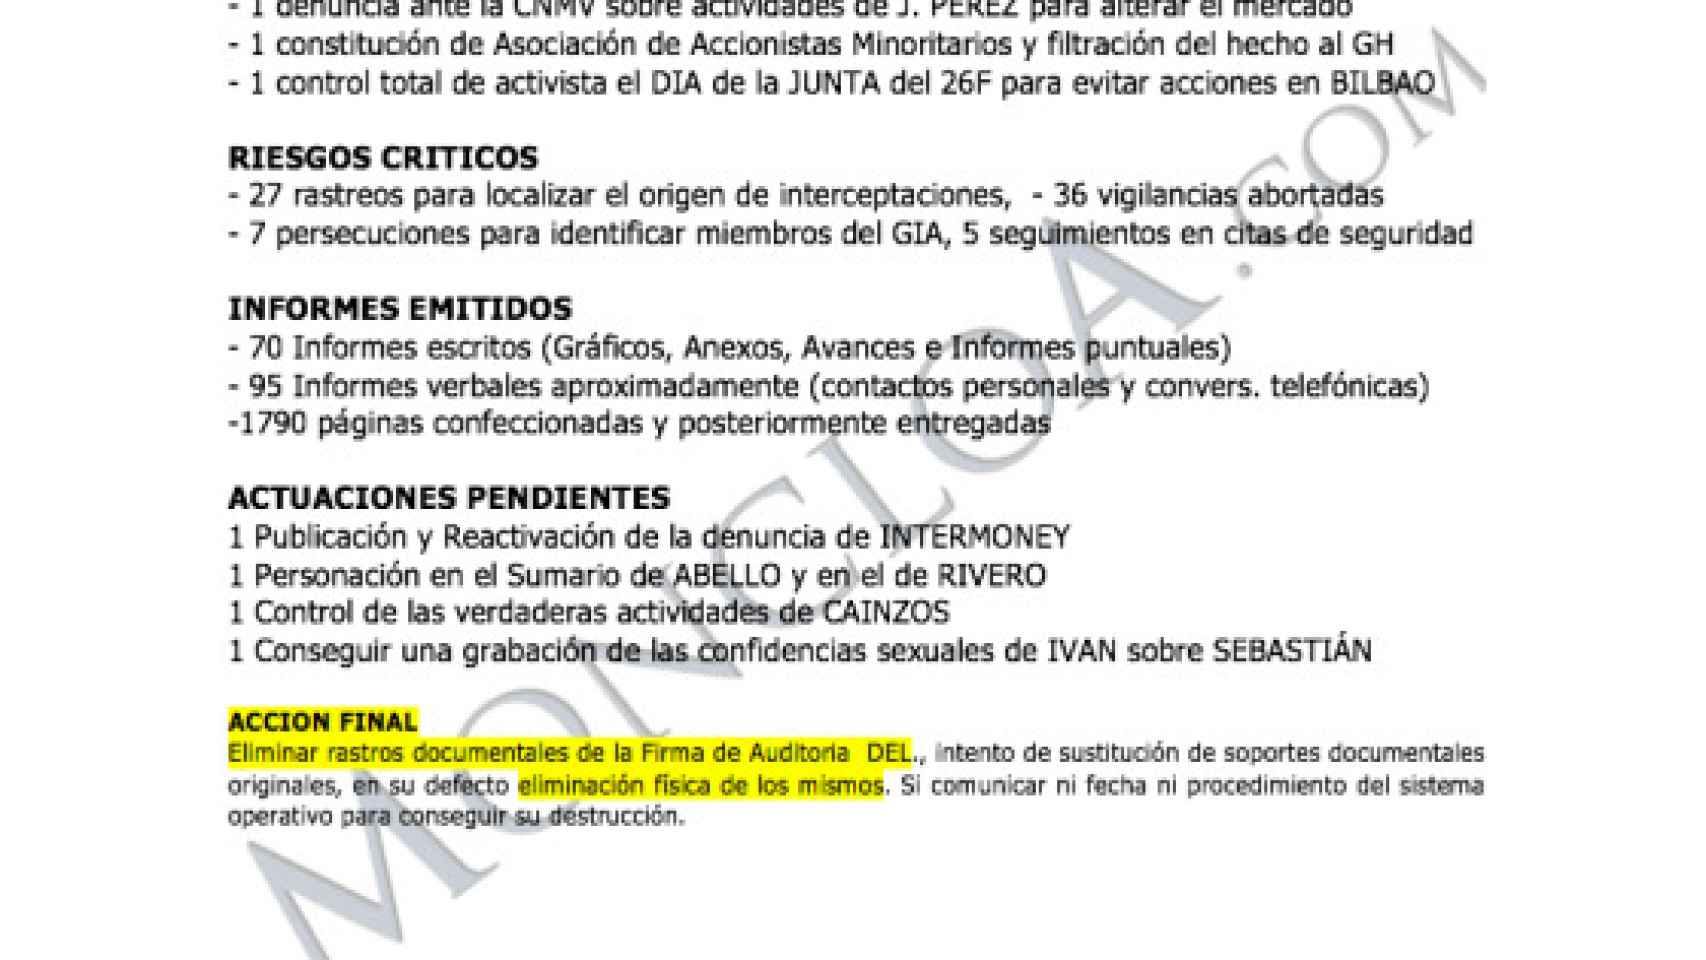 Documento donde Villarejo planea destruir la auditoría de Deloitte.